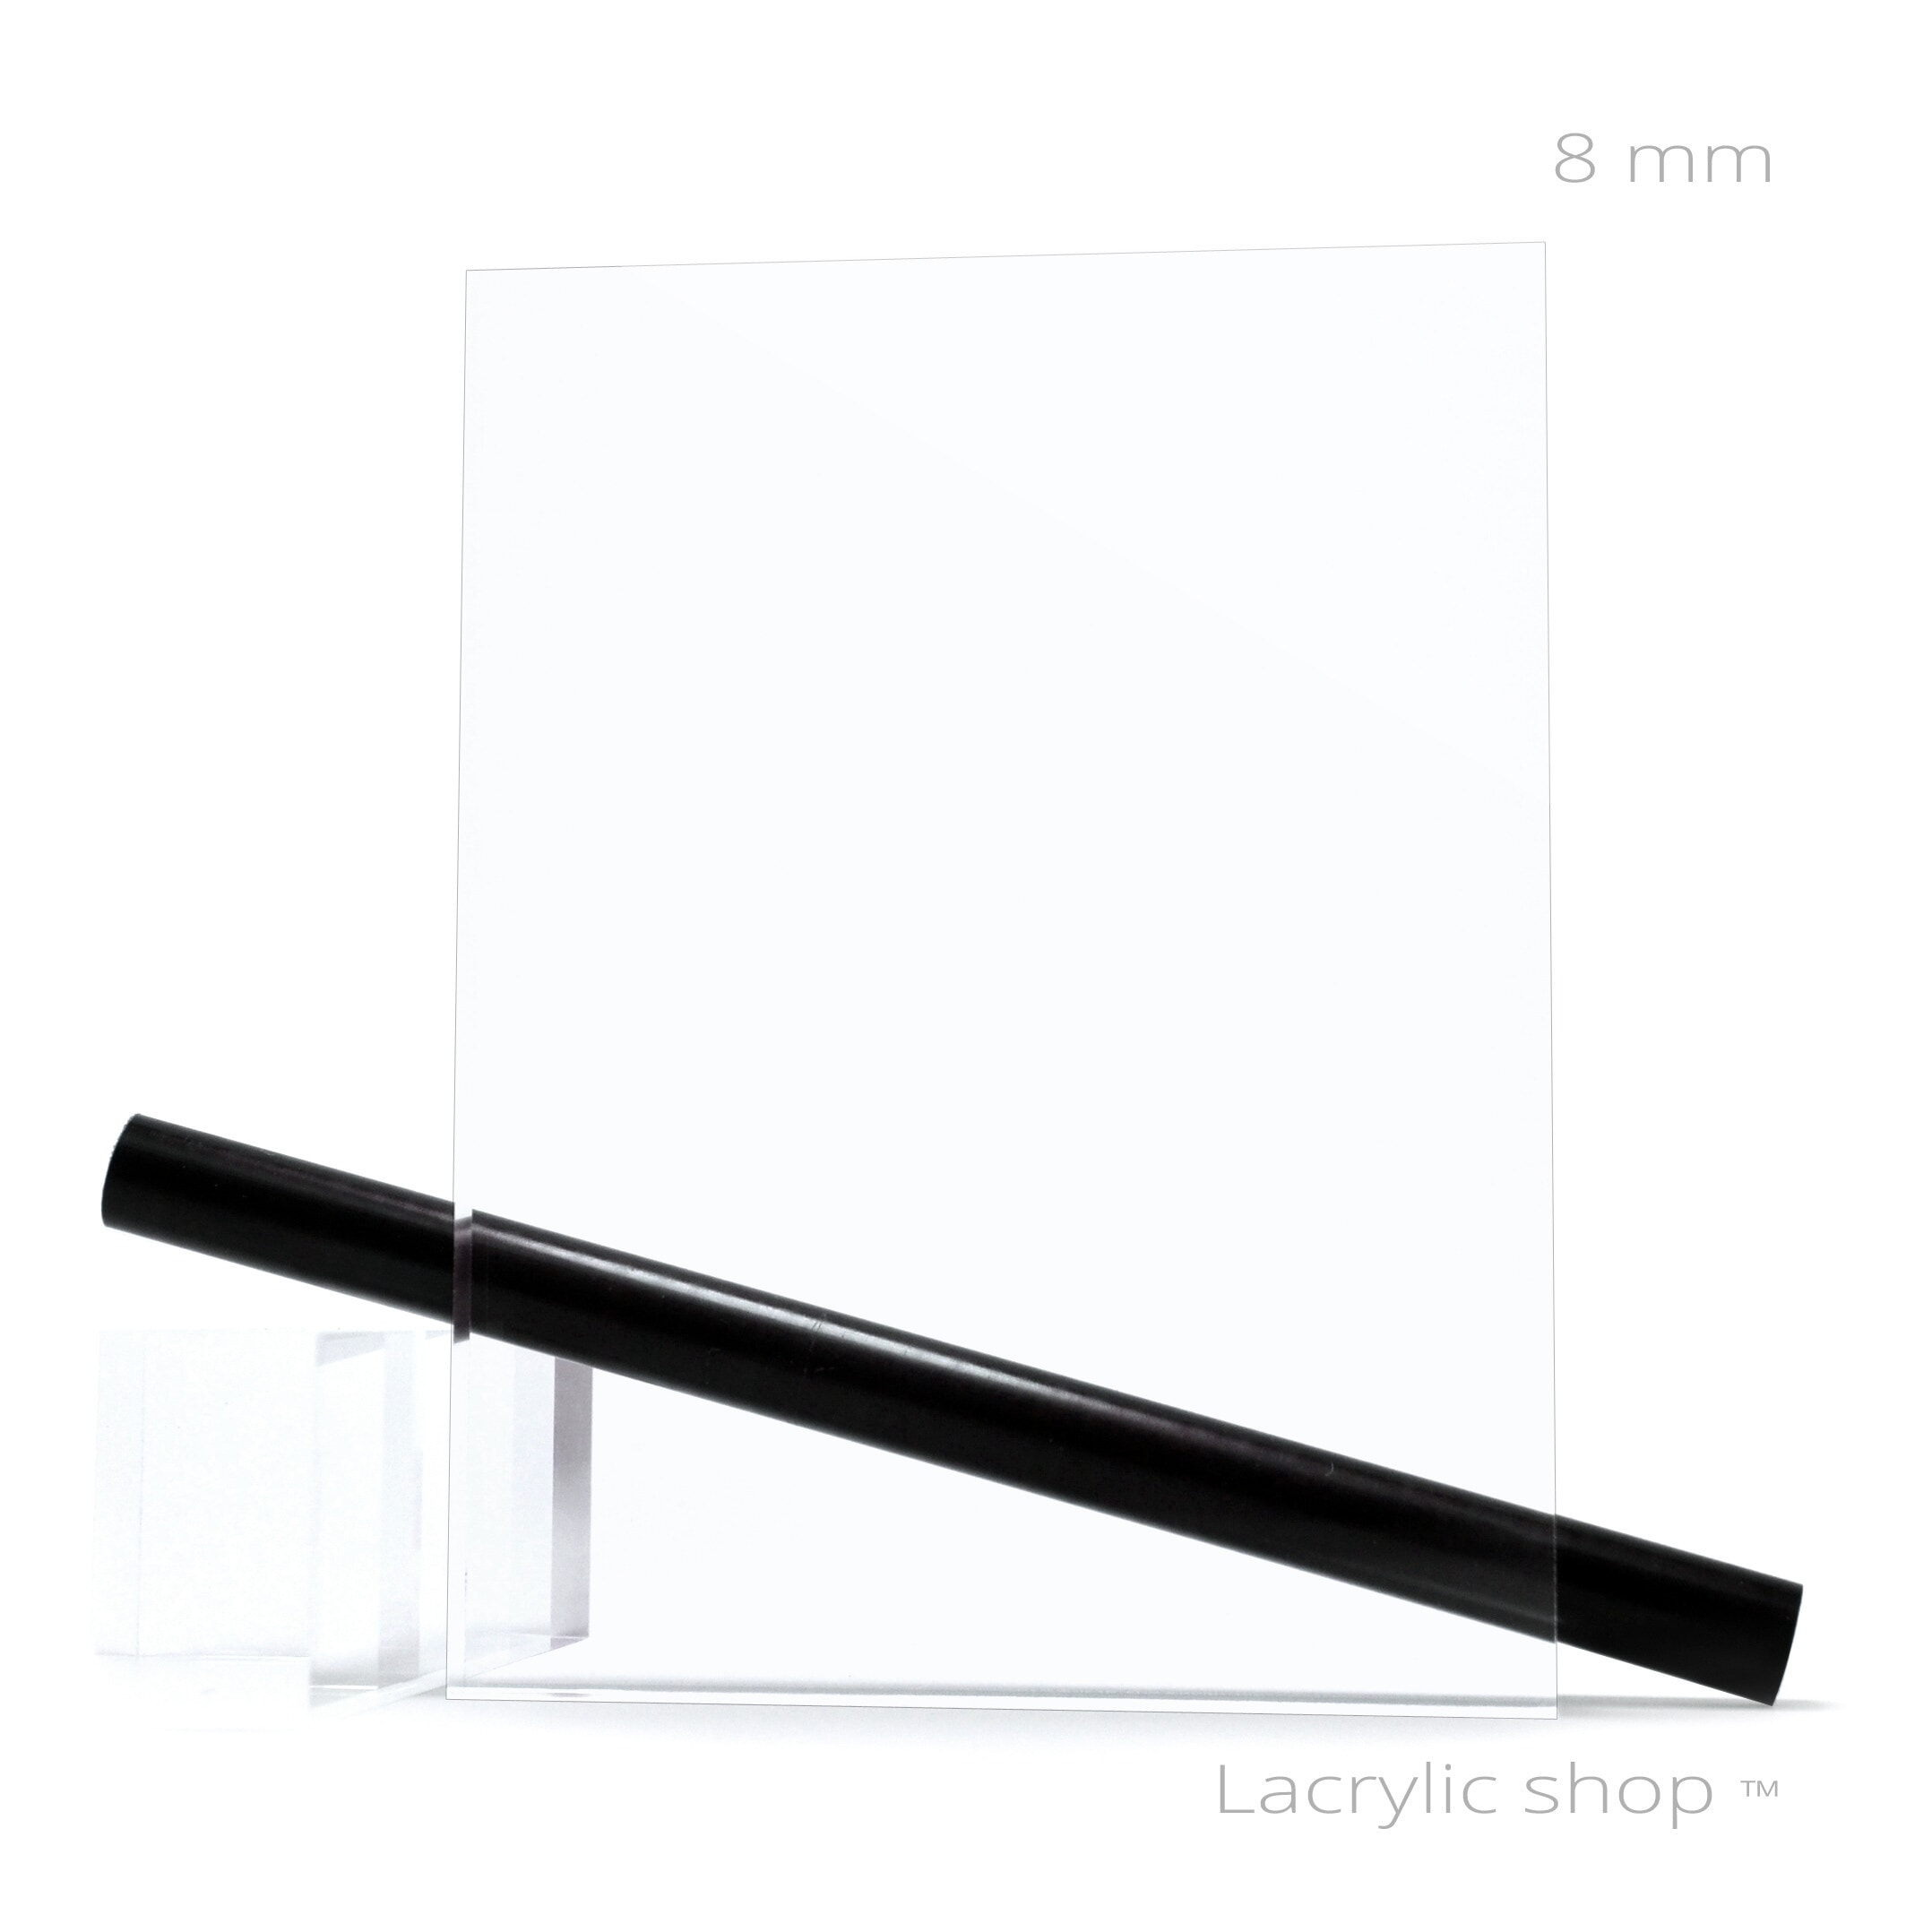 Plaque Plexigglas rond blanc 2 mm ou 4 mm. Feuille de verre